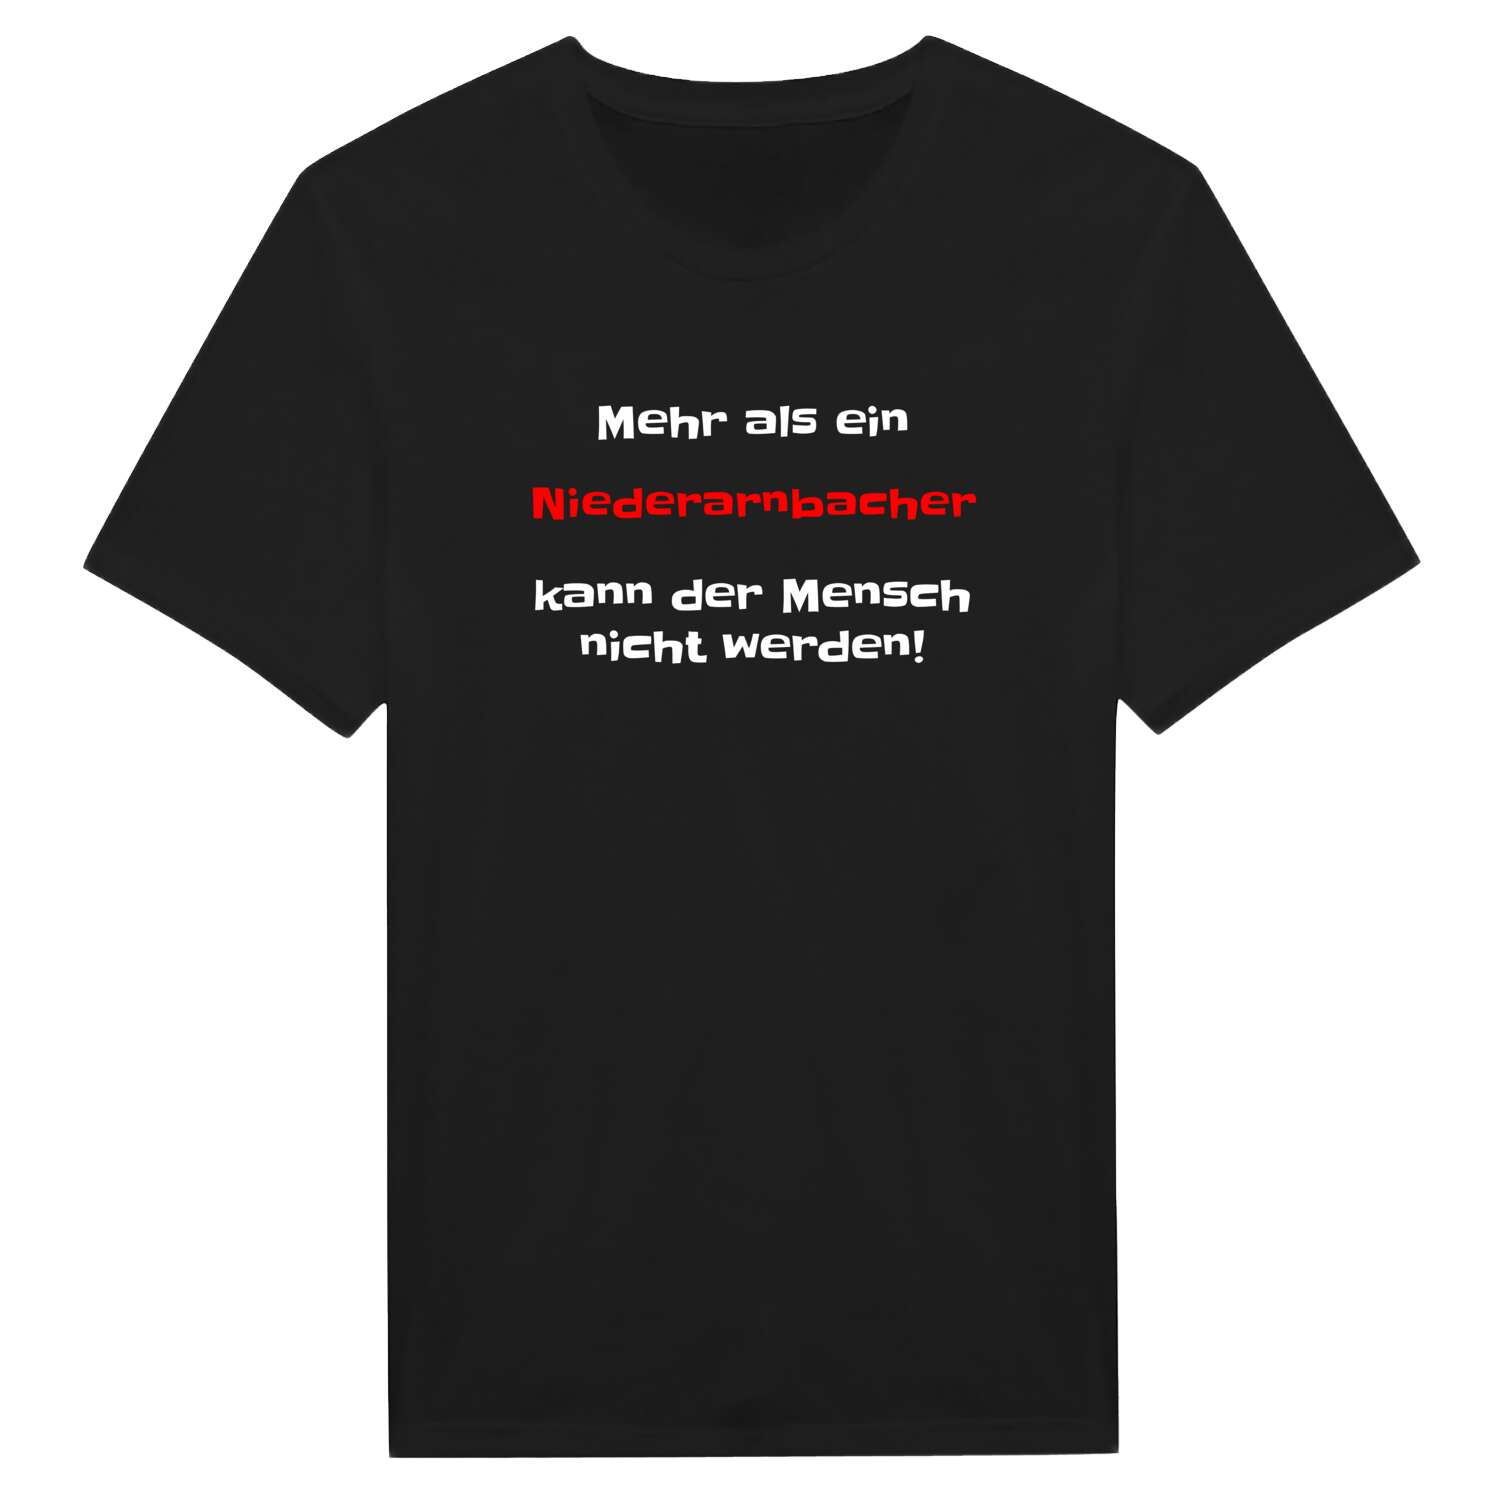 Niederarnbach T-Shirt »Mehr als ein«